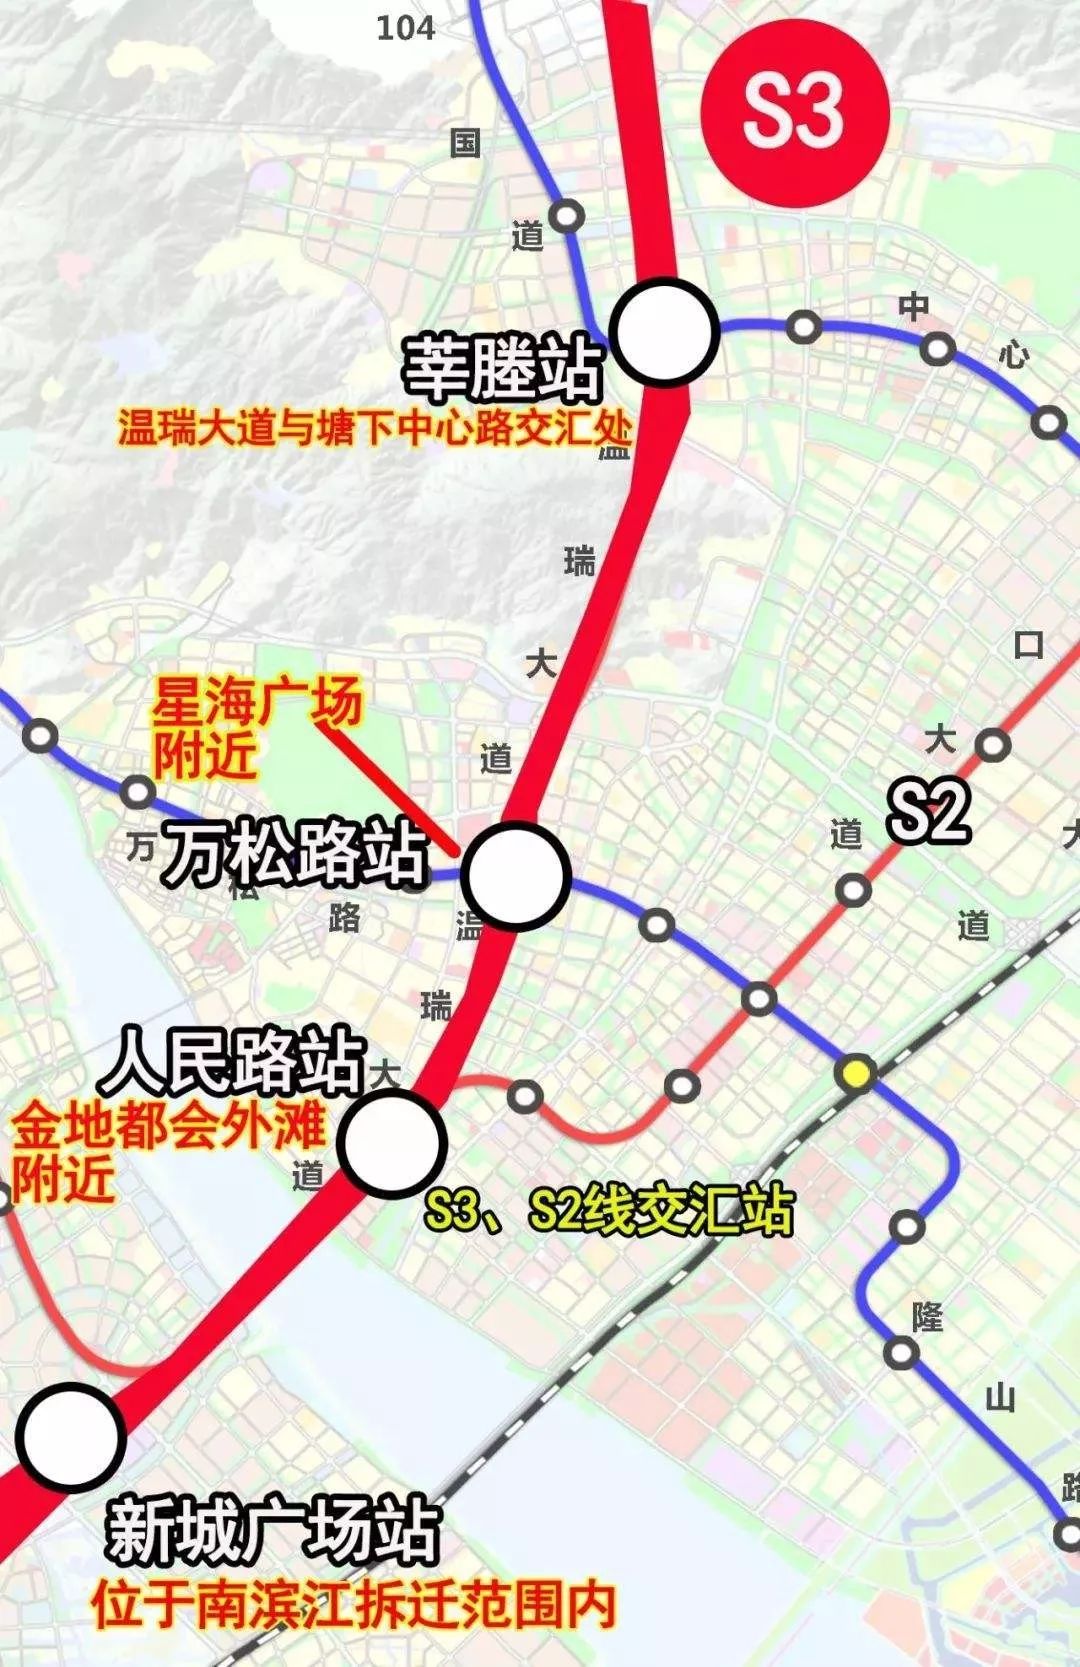 (轨道s3站点图 图片来源网络)2,轻轨s3线:市域铁路s3线是构建温州